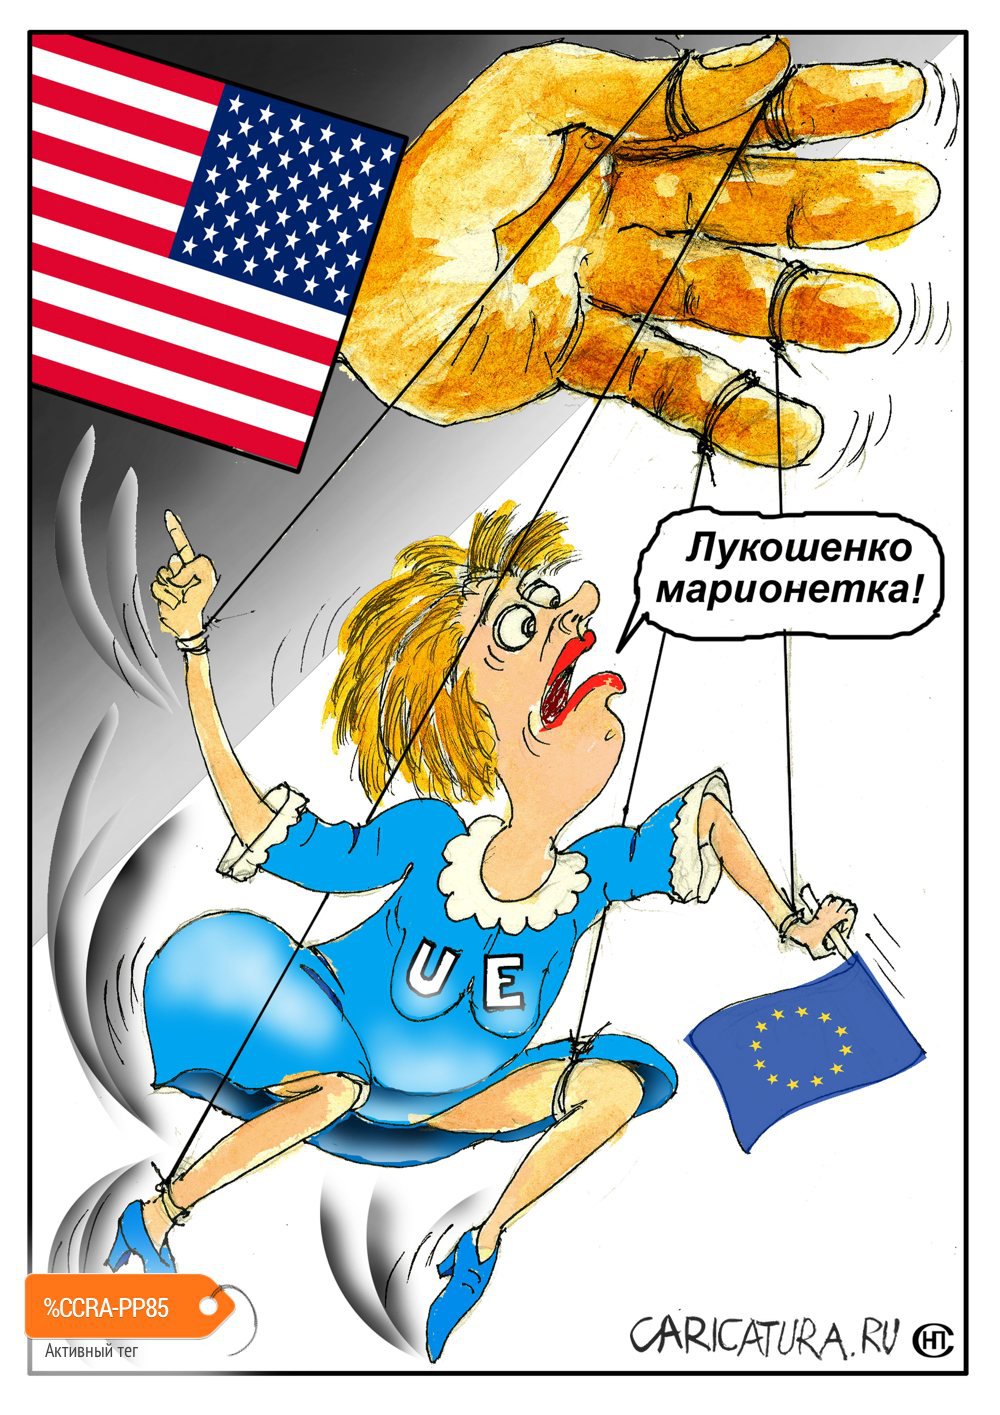 Карикатура "Крик вечной марионетки", Николай Свириденко